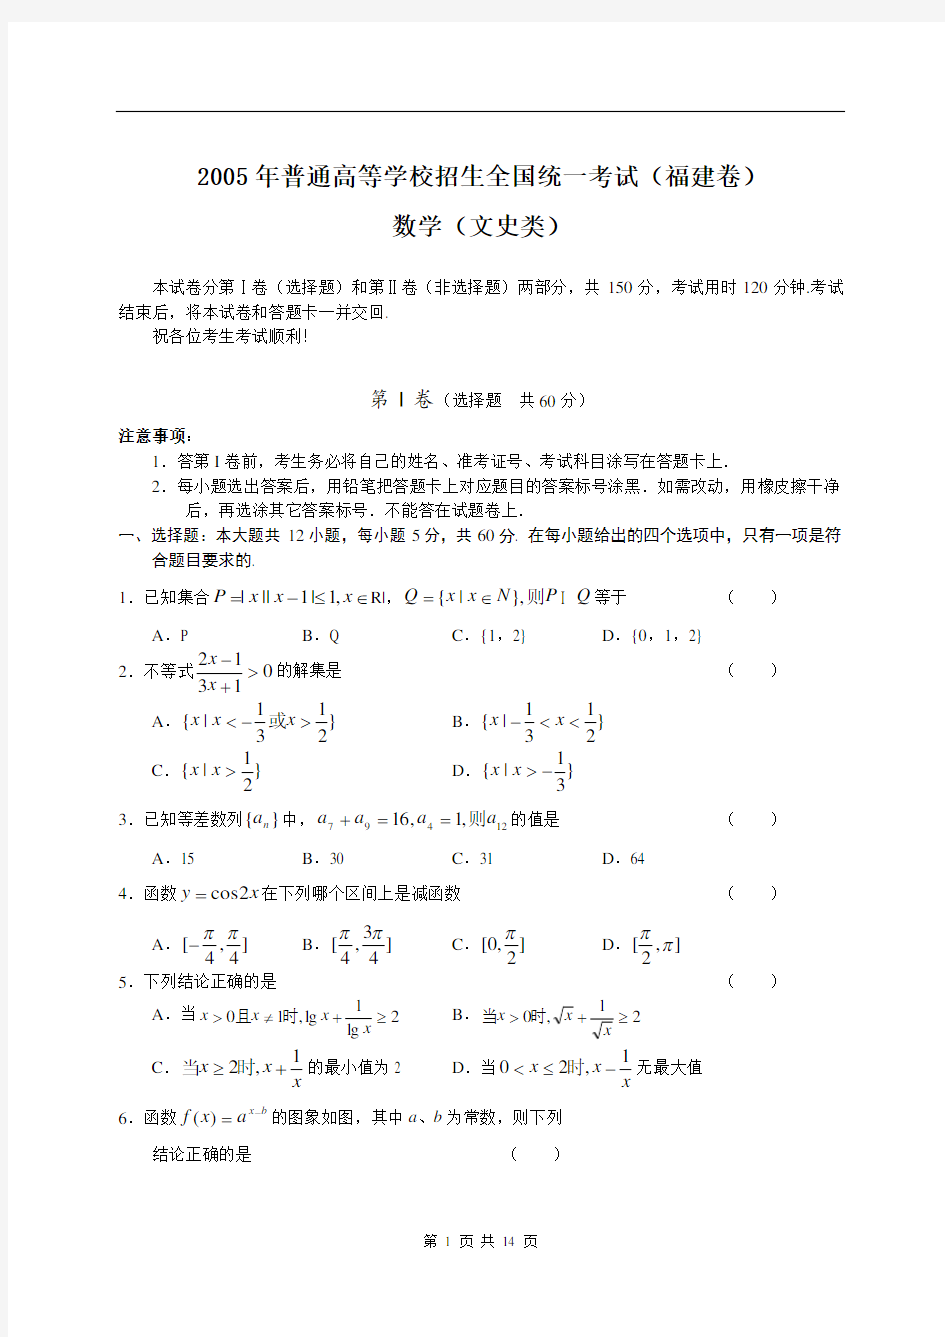 2005年高考文科数学试卷及答案(福建)